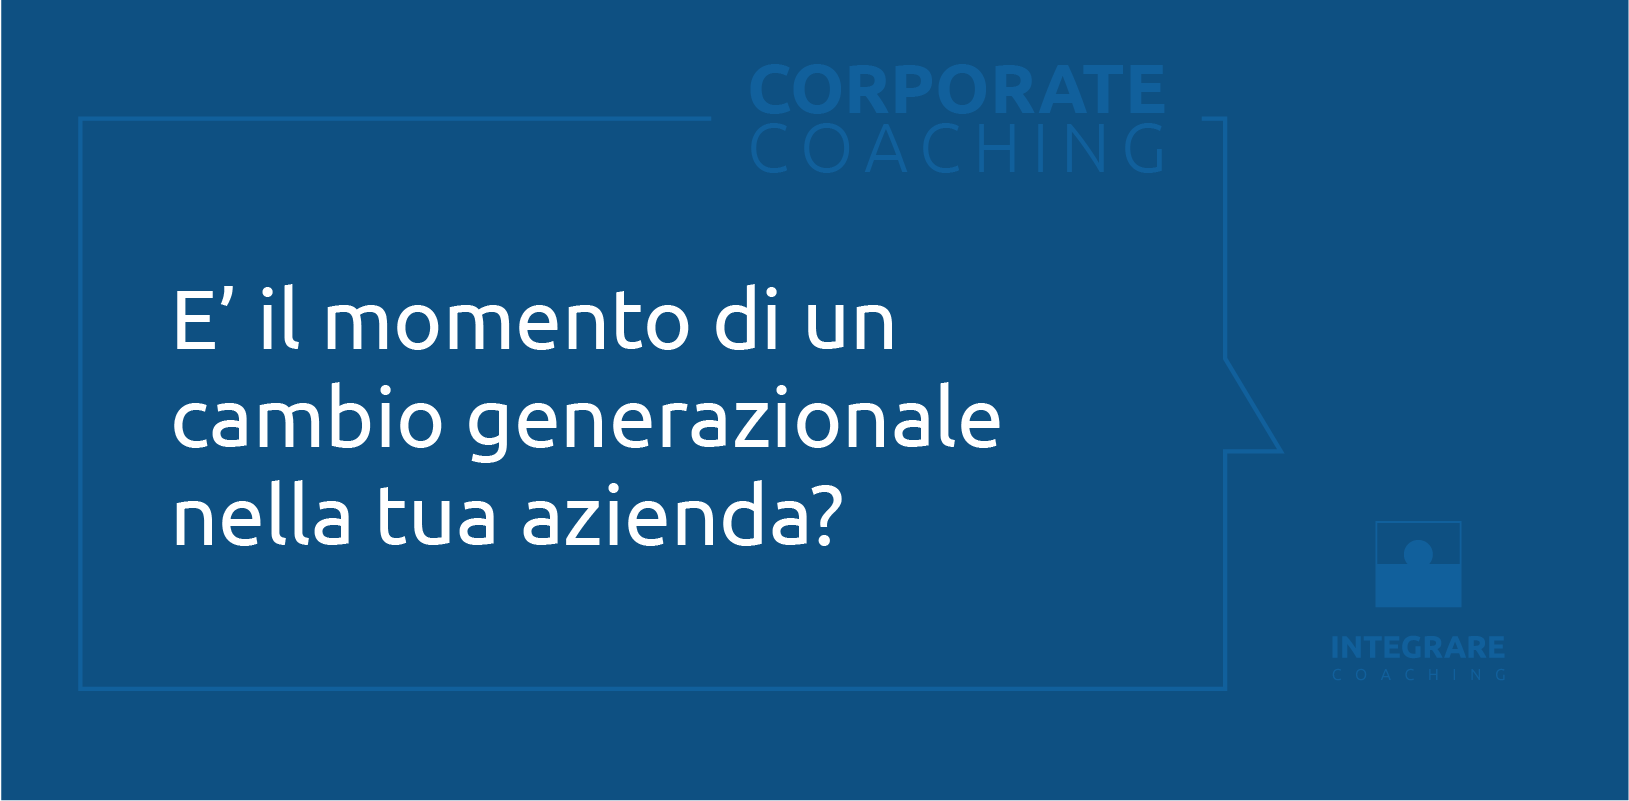 Corporate Coaching - 2/6